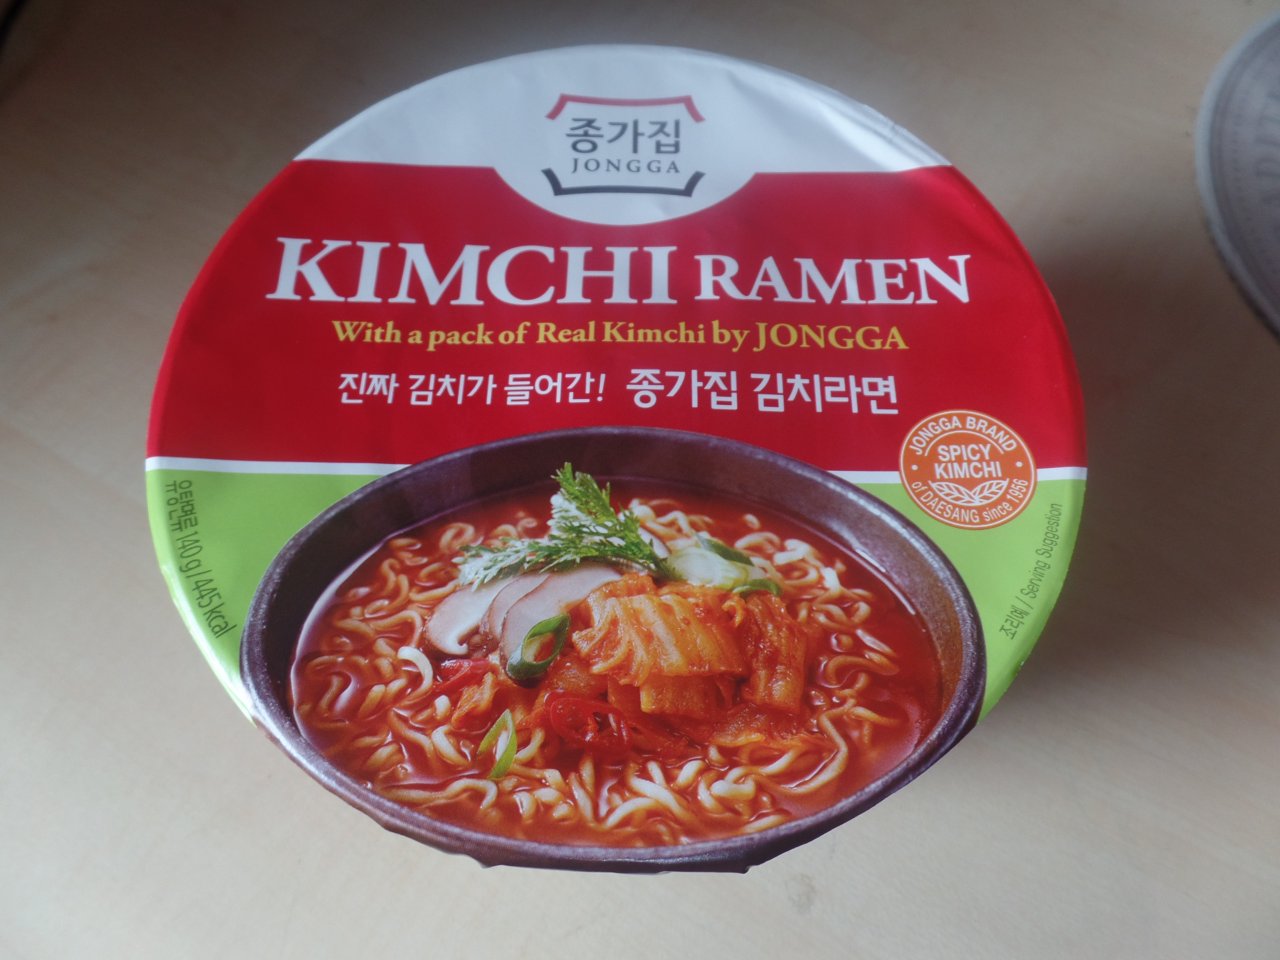 #1498: Jongga "Kimchi Ramen" Bowl